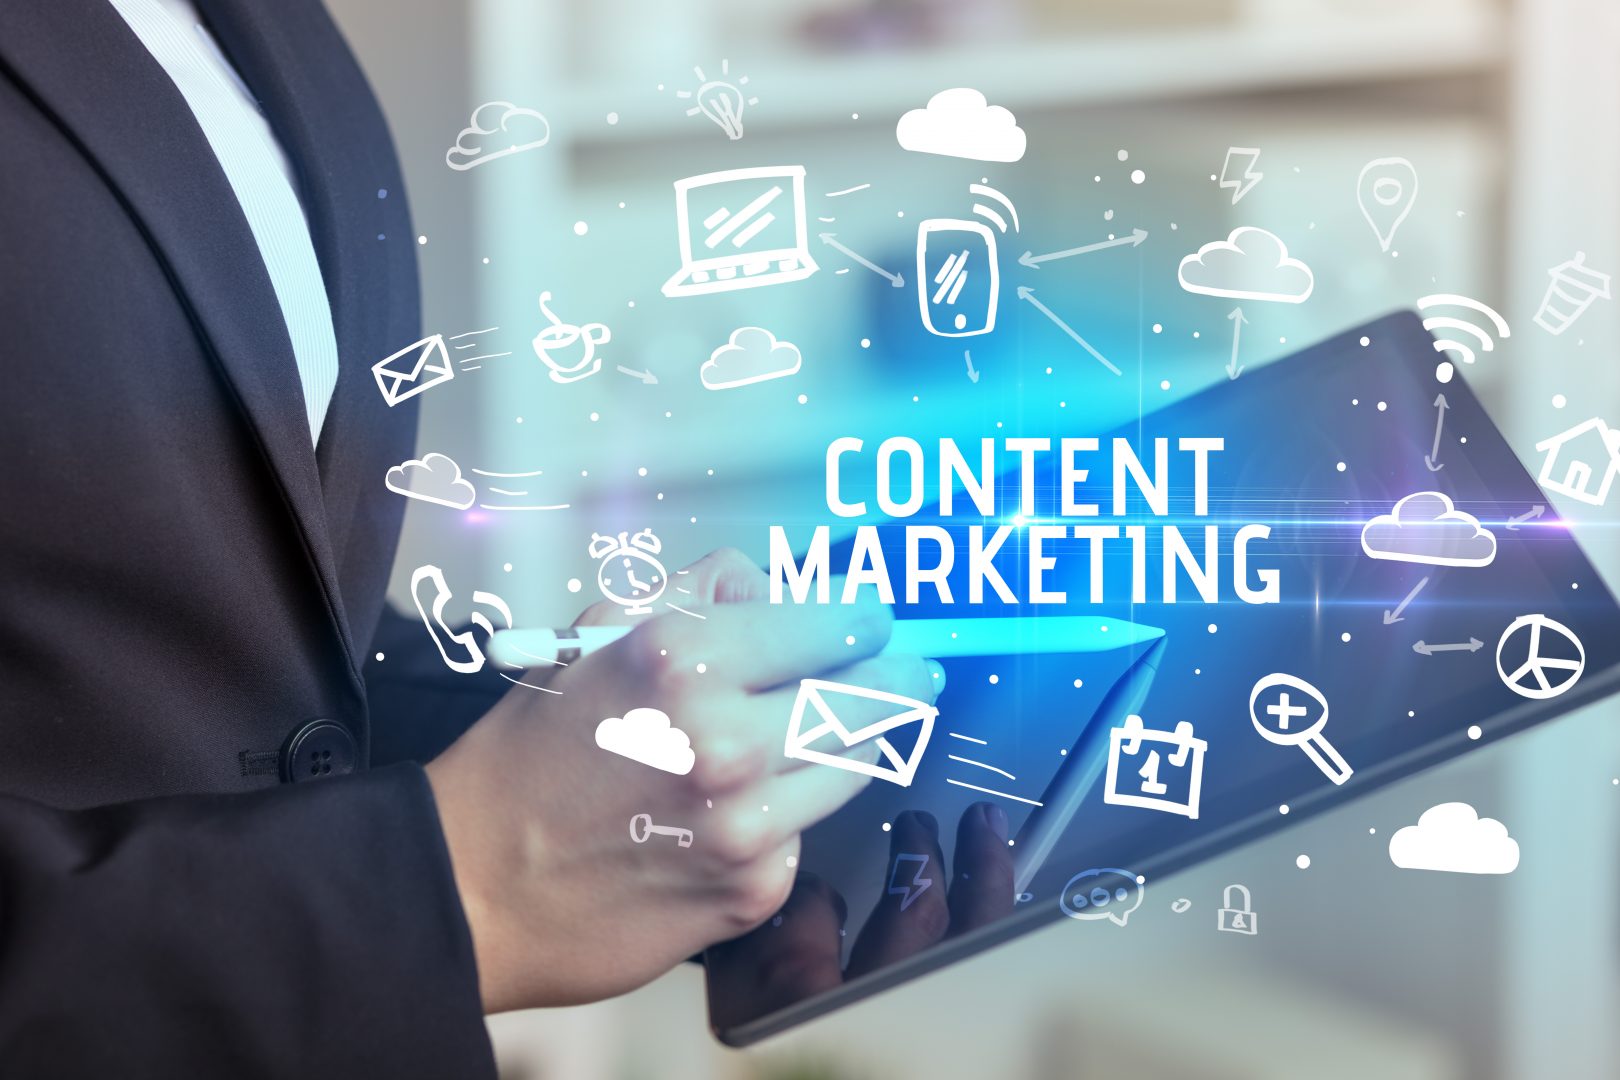 Content Marketing mit seinen unterschiedlichen Formaten als Icons